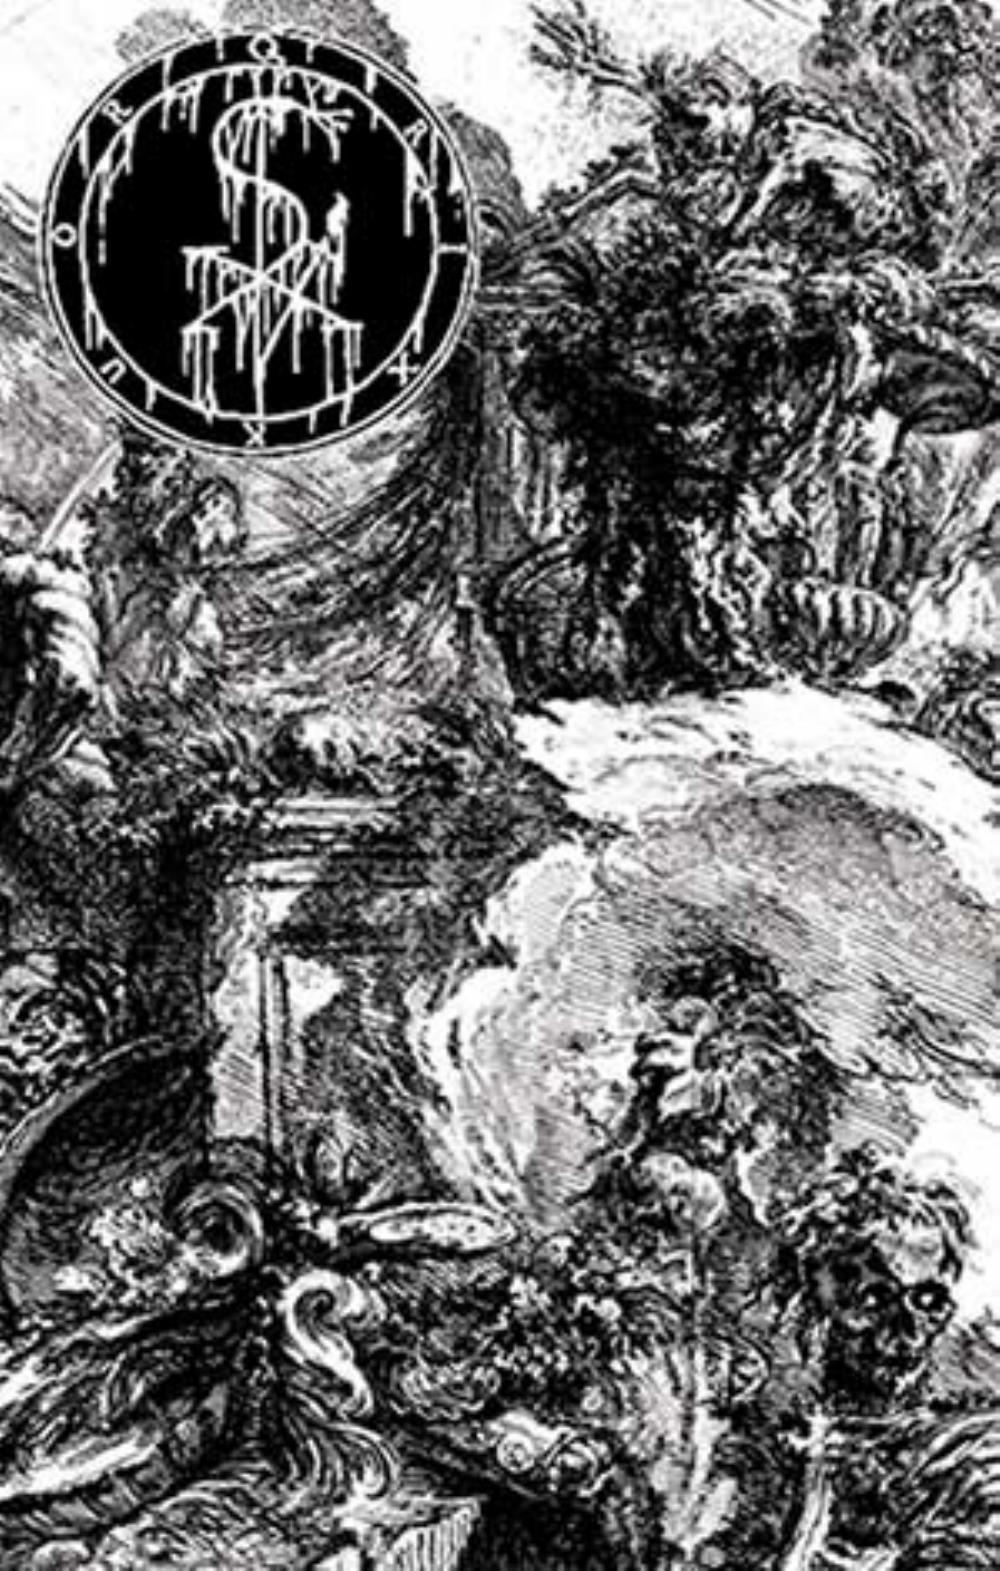 Qrixkuor Consecration of the Temple (demo) album cover